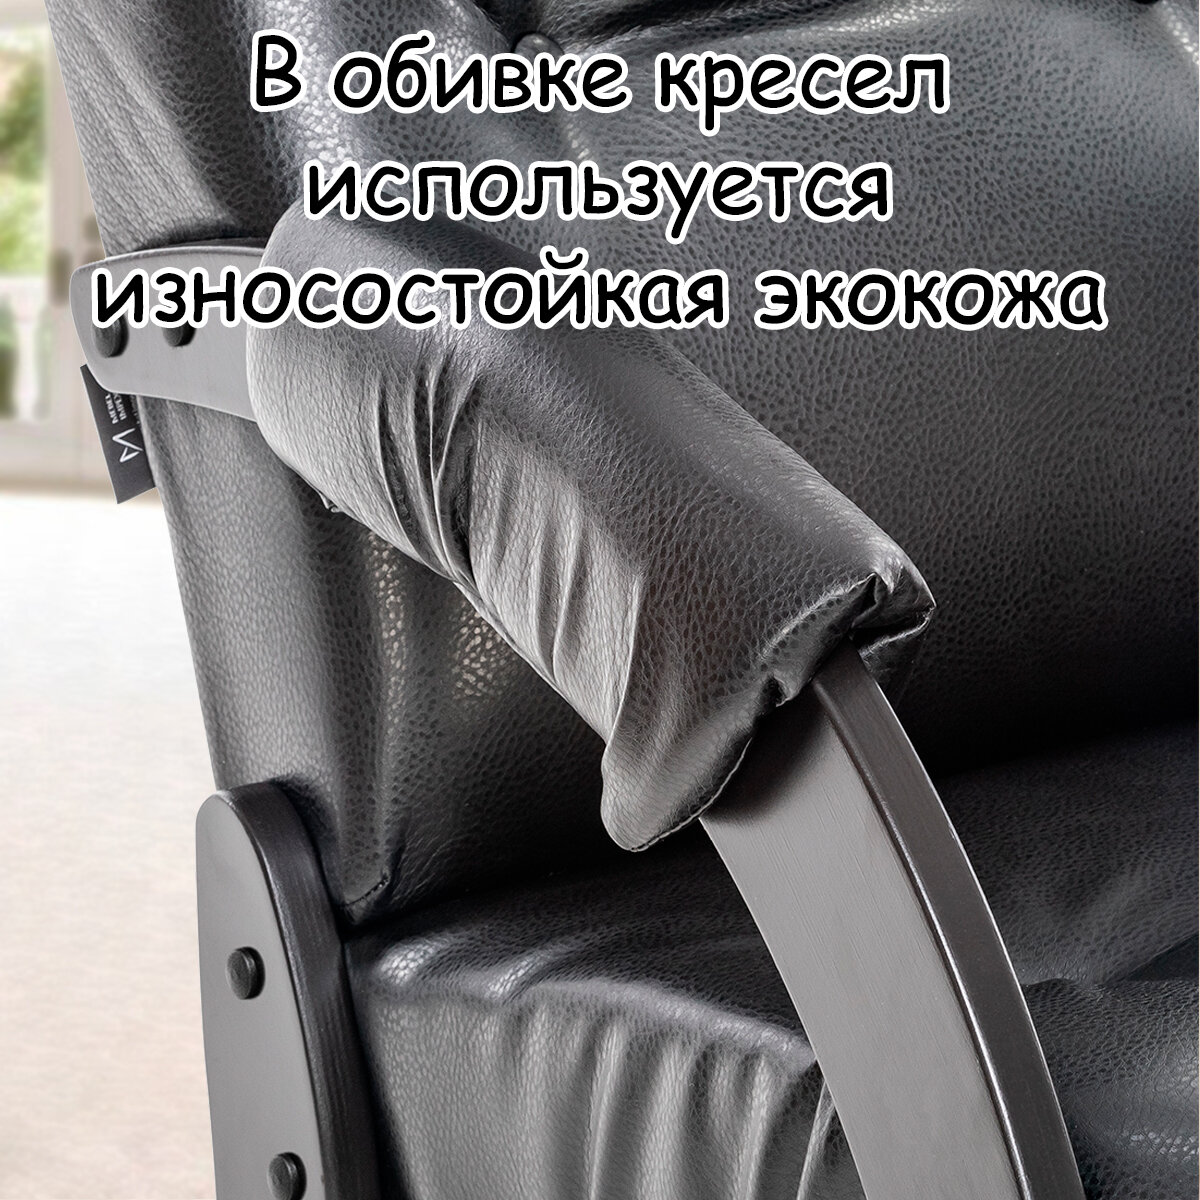 Кресло для взрослых 56х79х98 см, модель 61, экокожа, цвет: Vegas lite black (черный), каркас: Venge (черный) - фотография № 7